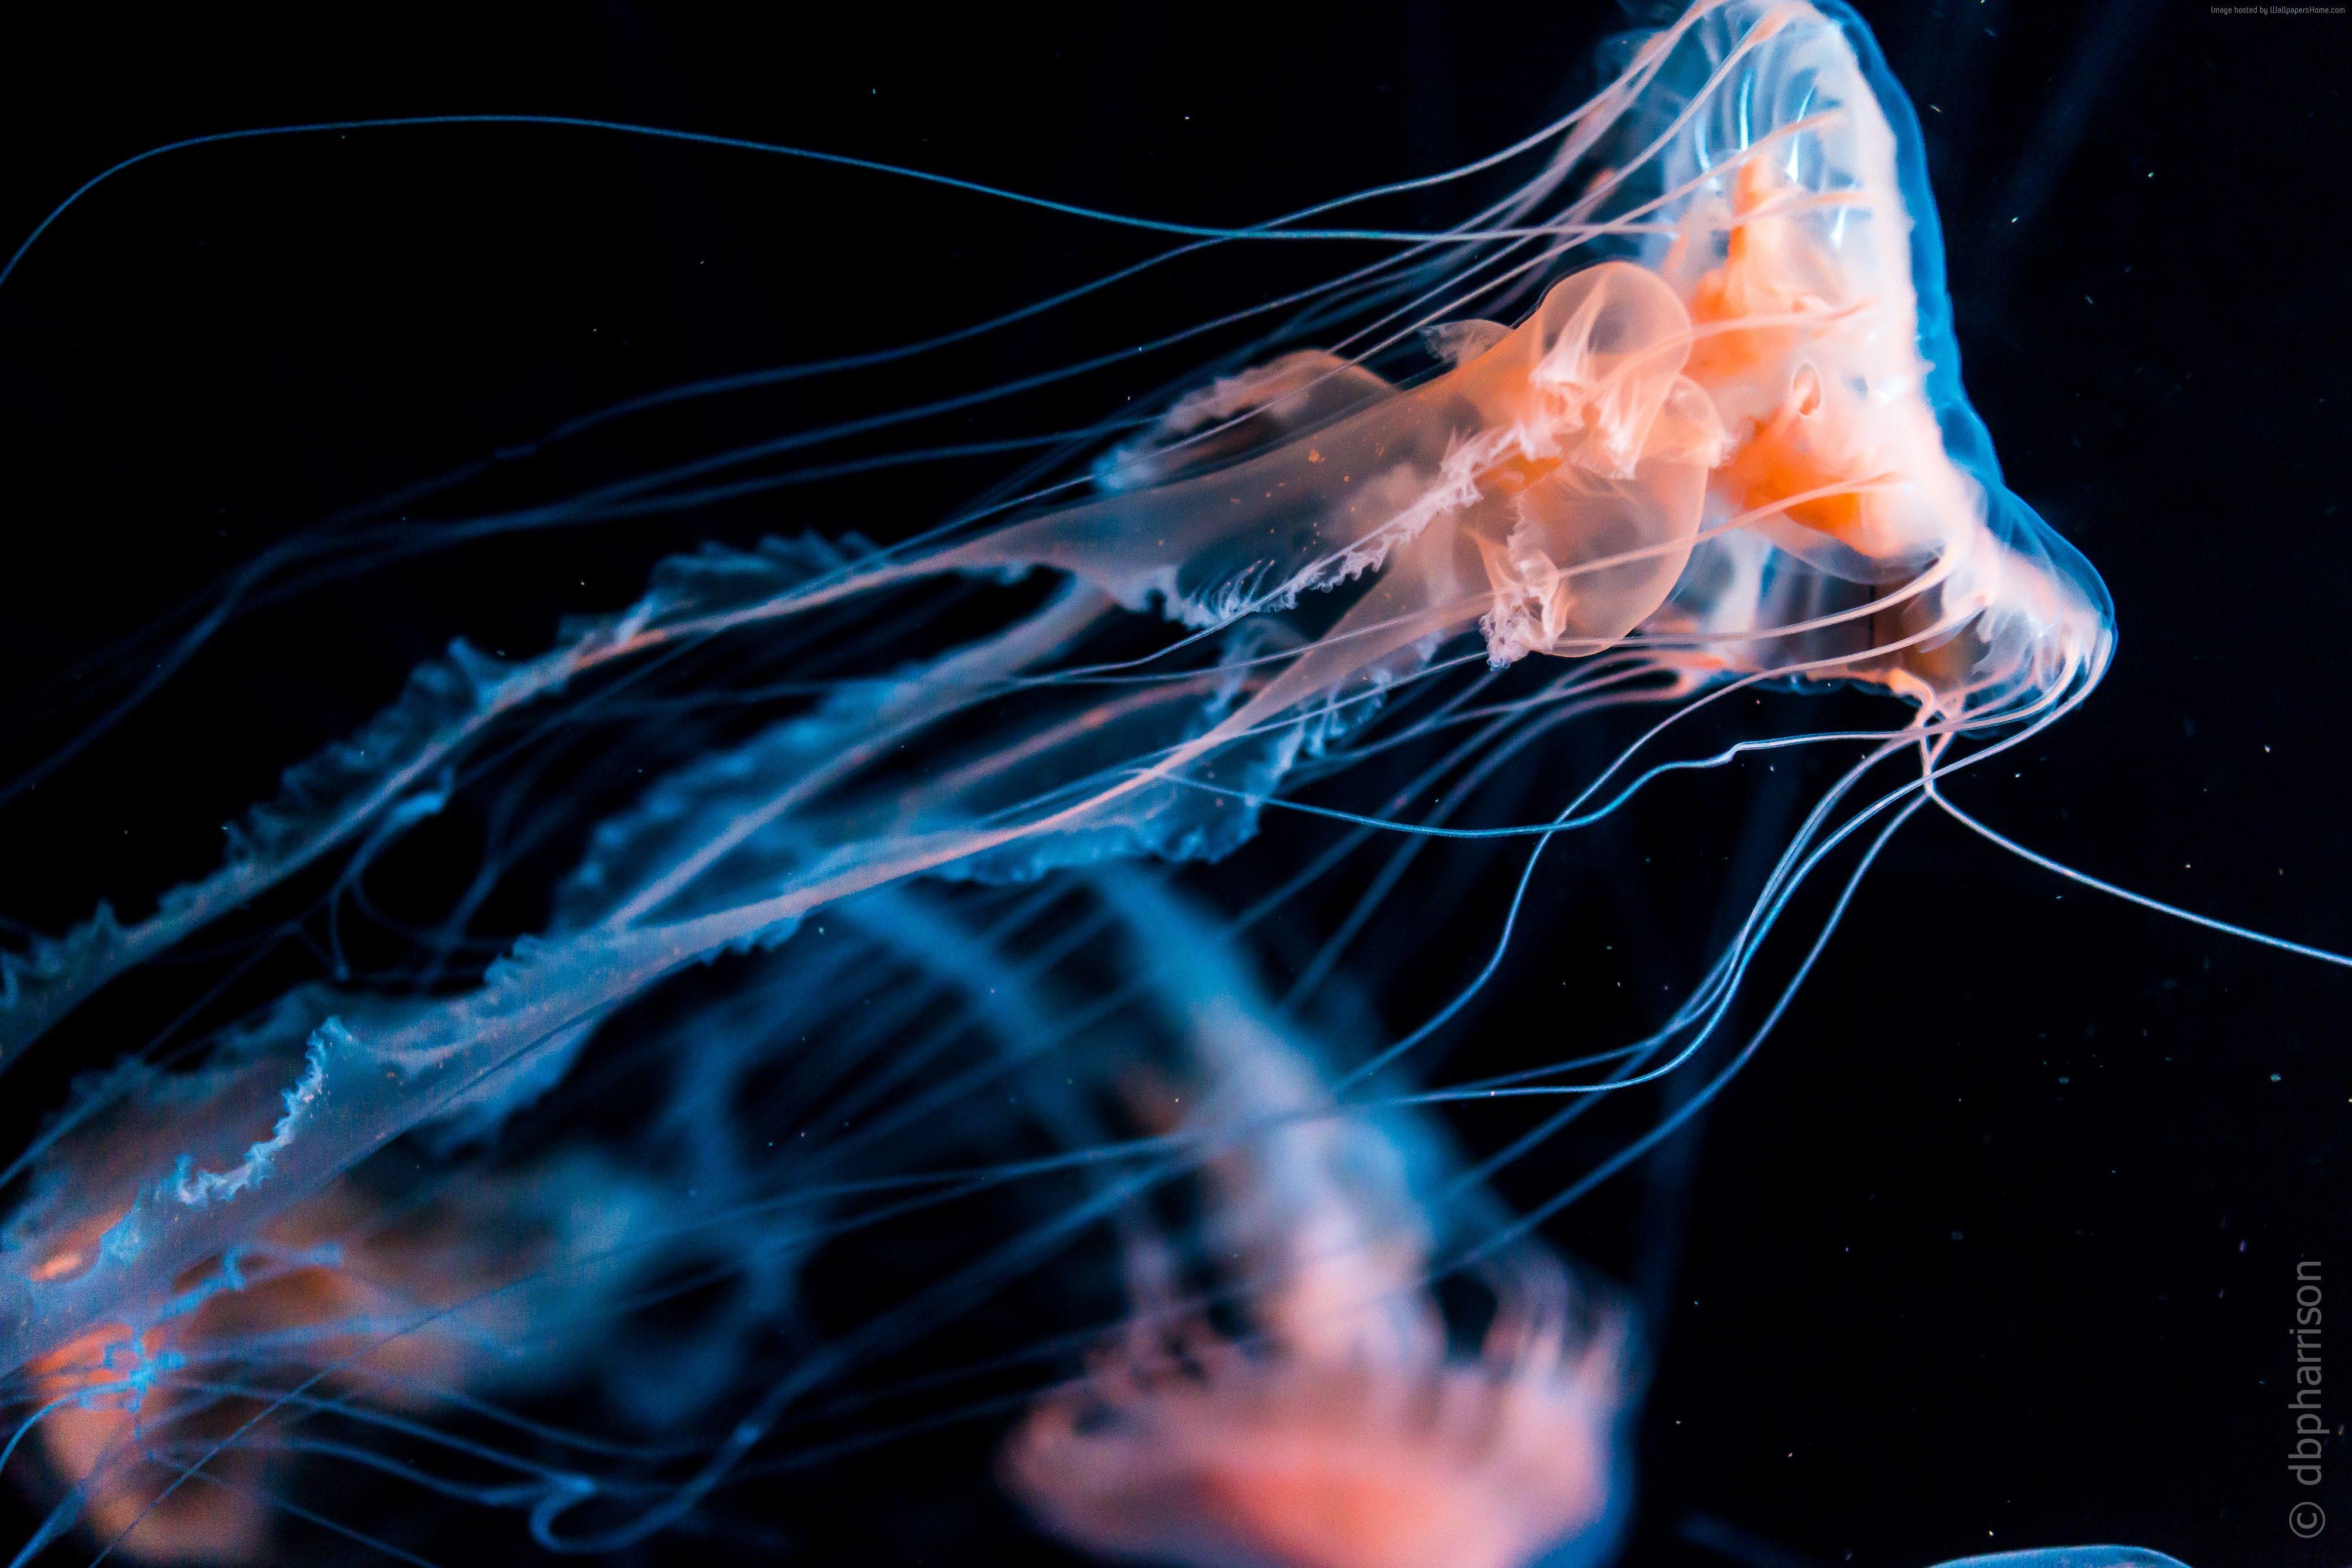 Jellyfish Wallpapers - Top Những Hình Ảnh Đẹp